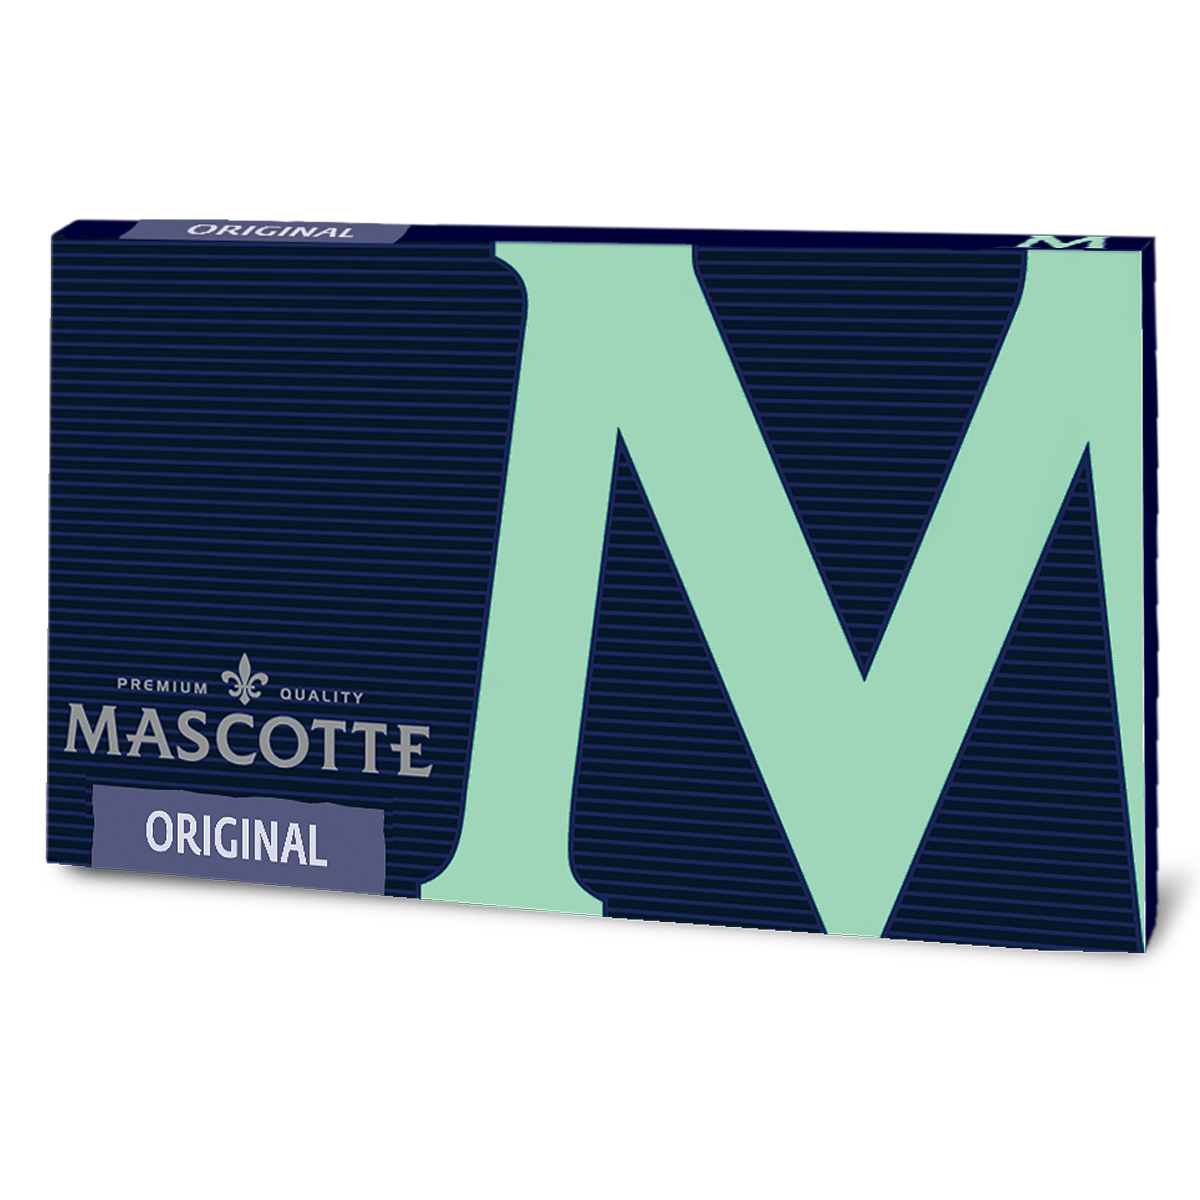 Mascotte マスコット マグネットダブル オリジナル 100枚入×3冊パック フリーバーニング 7-63005-35